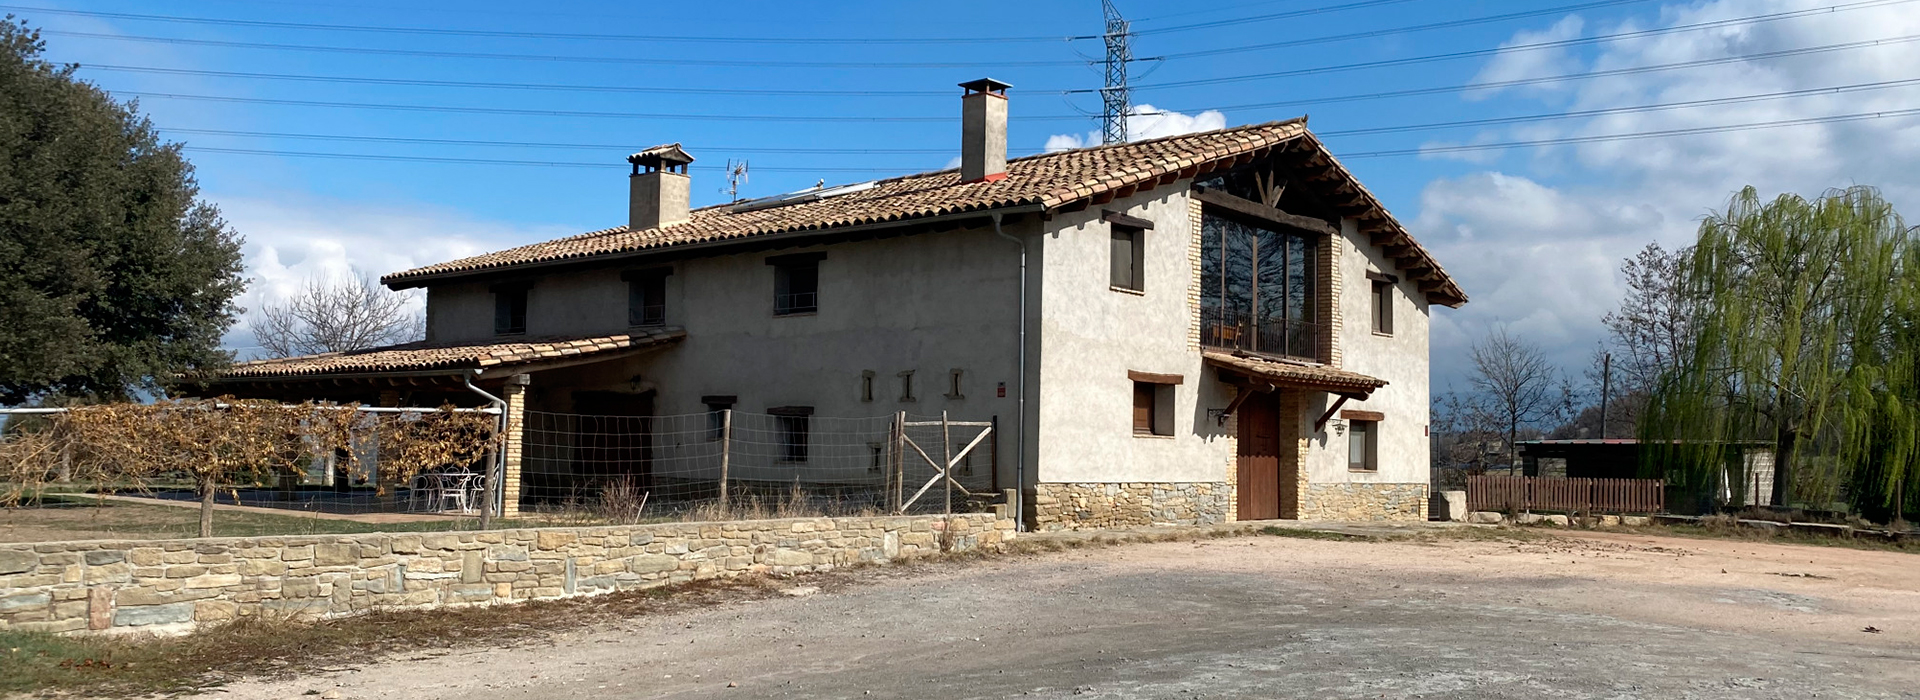 Casa Nova de Puigseslloses